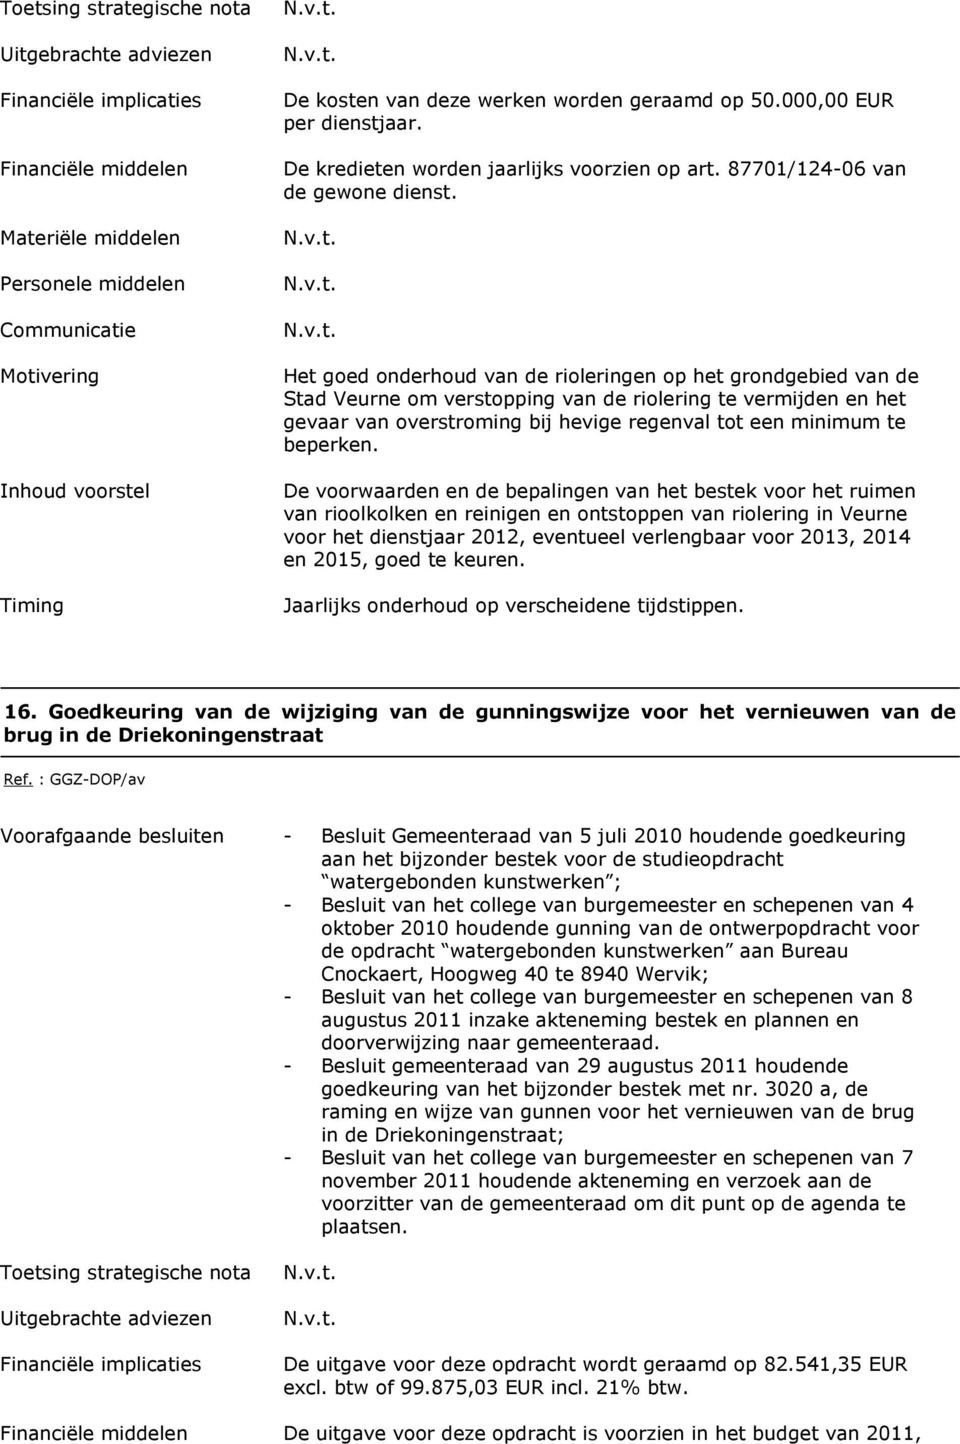 De voorwaarden en de bepalingen van het bestek voor het ruimen van rioolkolken en reinigen en ontstoppen van riolering in Veurne voor het dienstjaar 2012, eventueel verlengbaar voor 2013, 2014 en